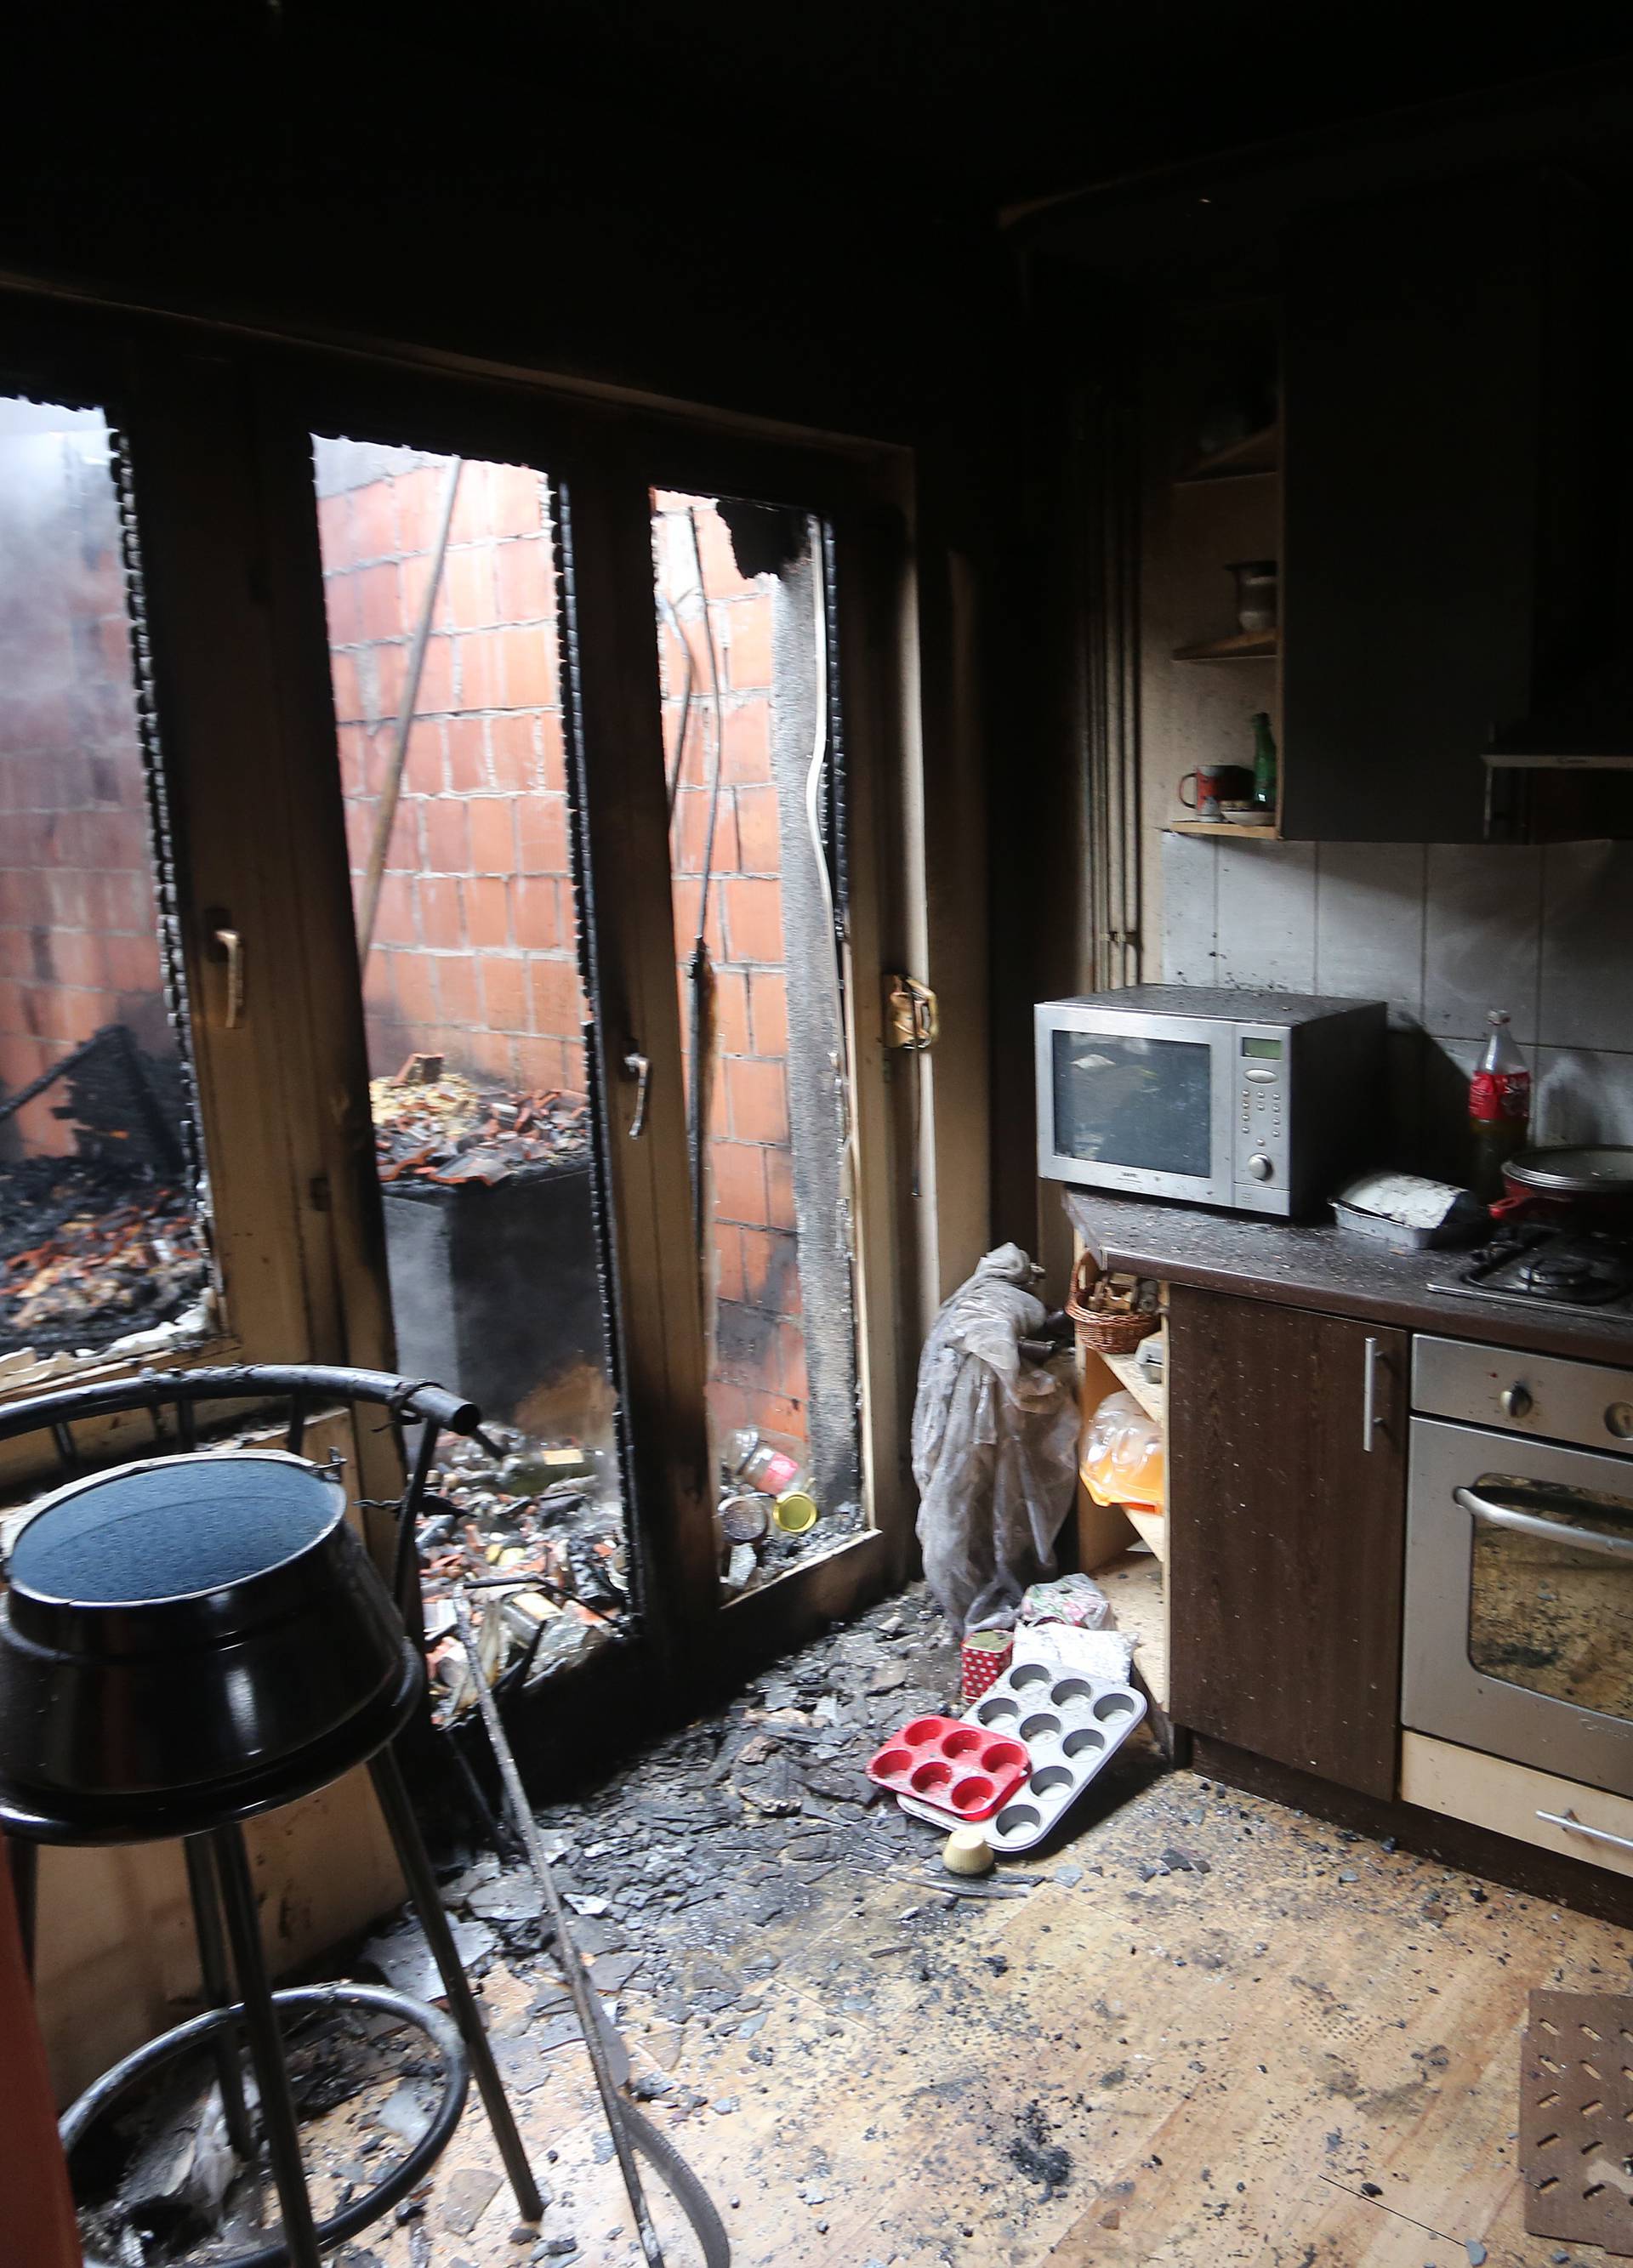 Osječki vatrogasac: "Na poslu sam saznao da mi gori kuća..."